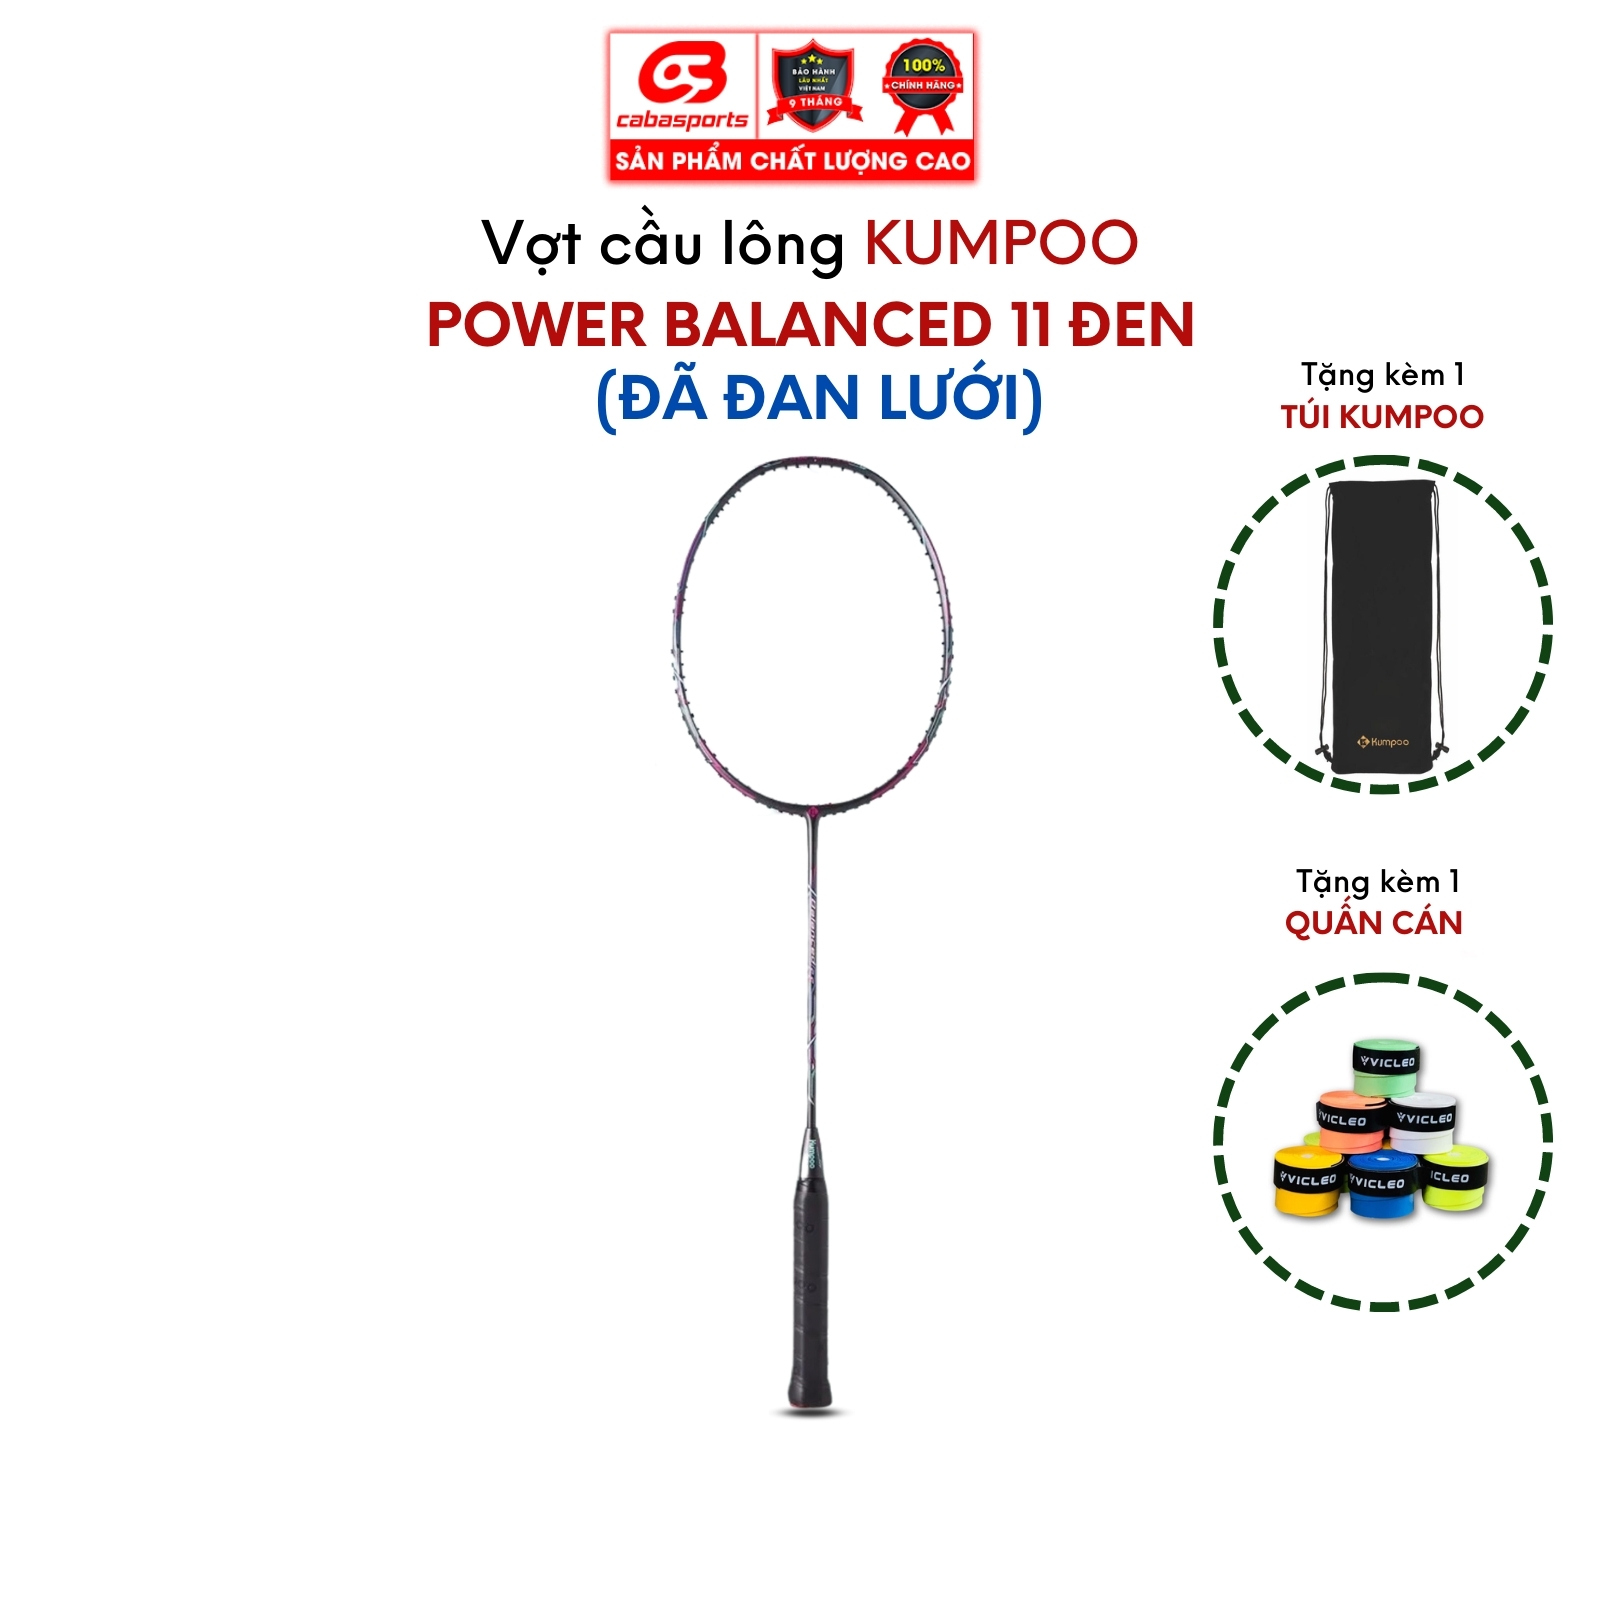 Vợt cầu lông đơn đã đan lưới Kumpoo Power Balanced 11 siêu nhẹ chính hãng, vợt công thủ toàn diện chất lượng giá rẻ